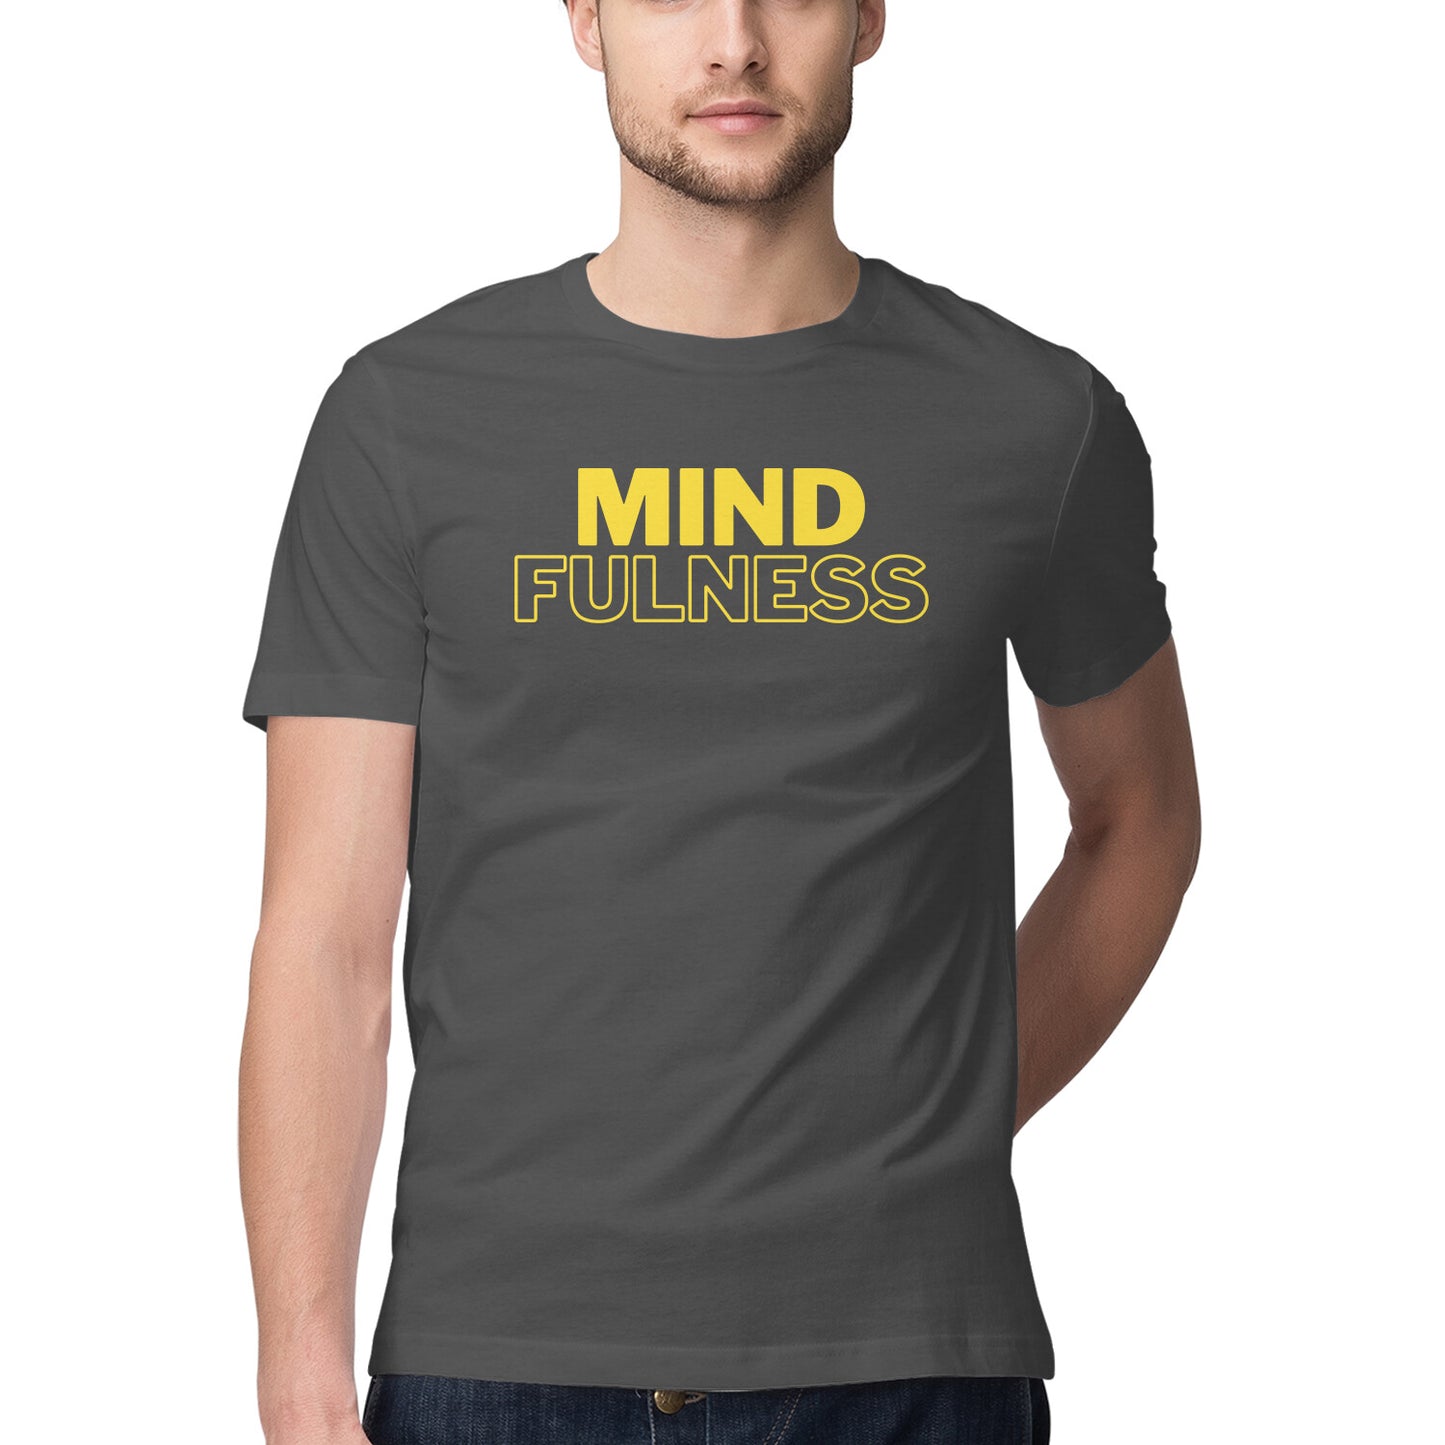 Mindfulness - Unisex Tshirt